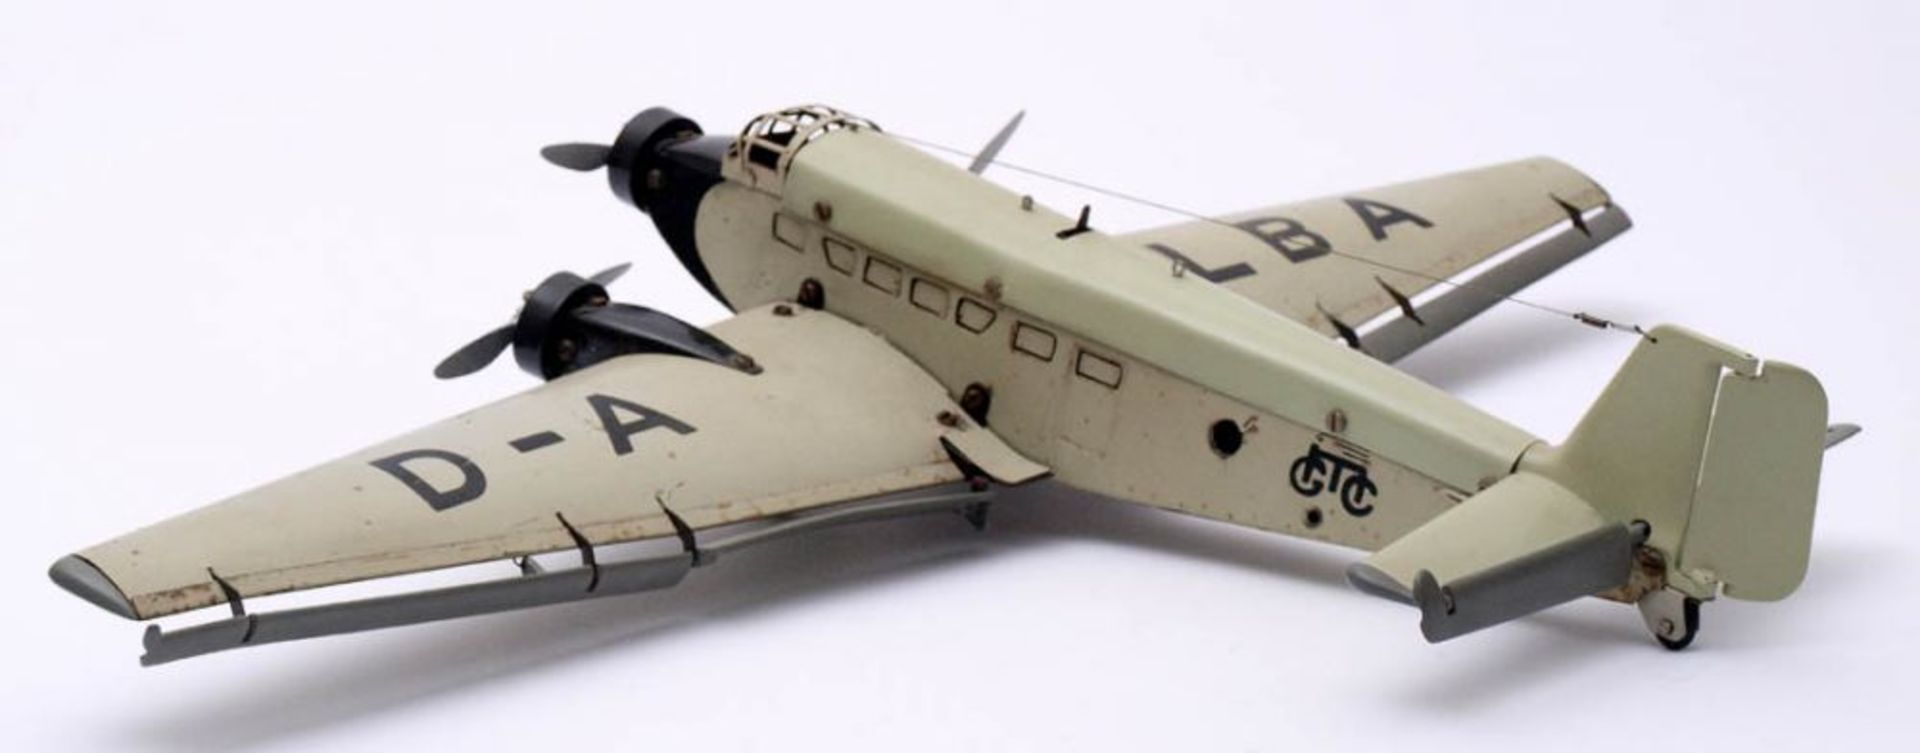 Propellerflugzeug Ju 52, Märklin, 1936/37 Mit dem Flugzeugbaukasten 1152 gebaut. Guter Zustand. L. - Bild 5 aus 7